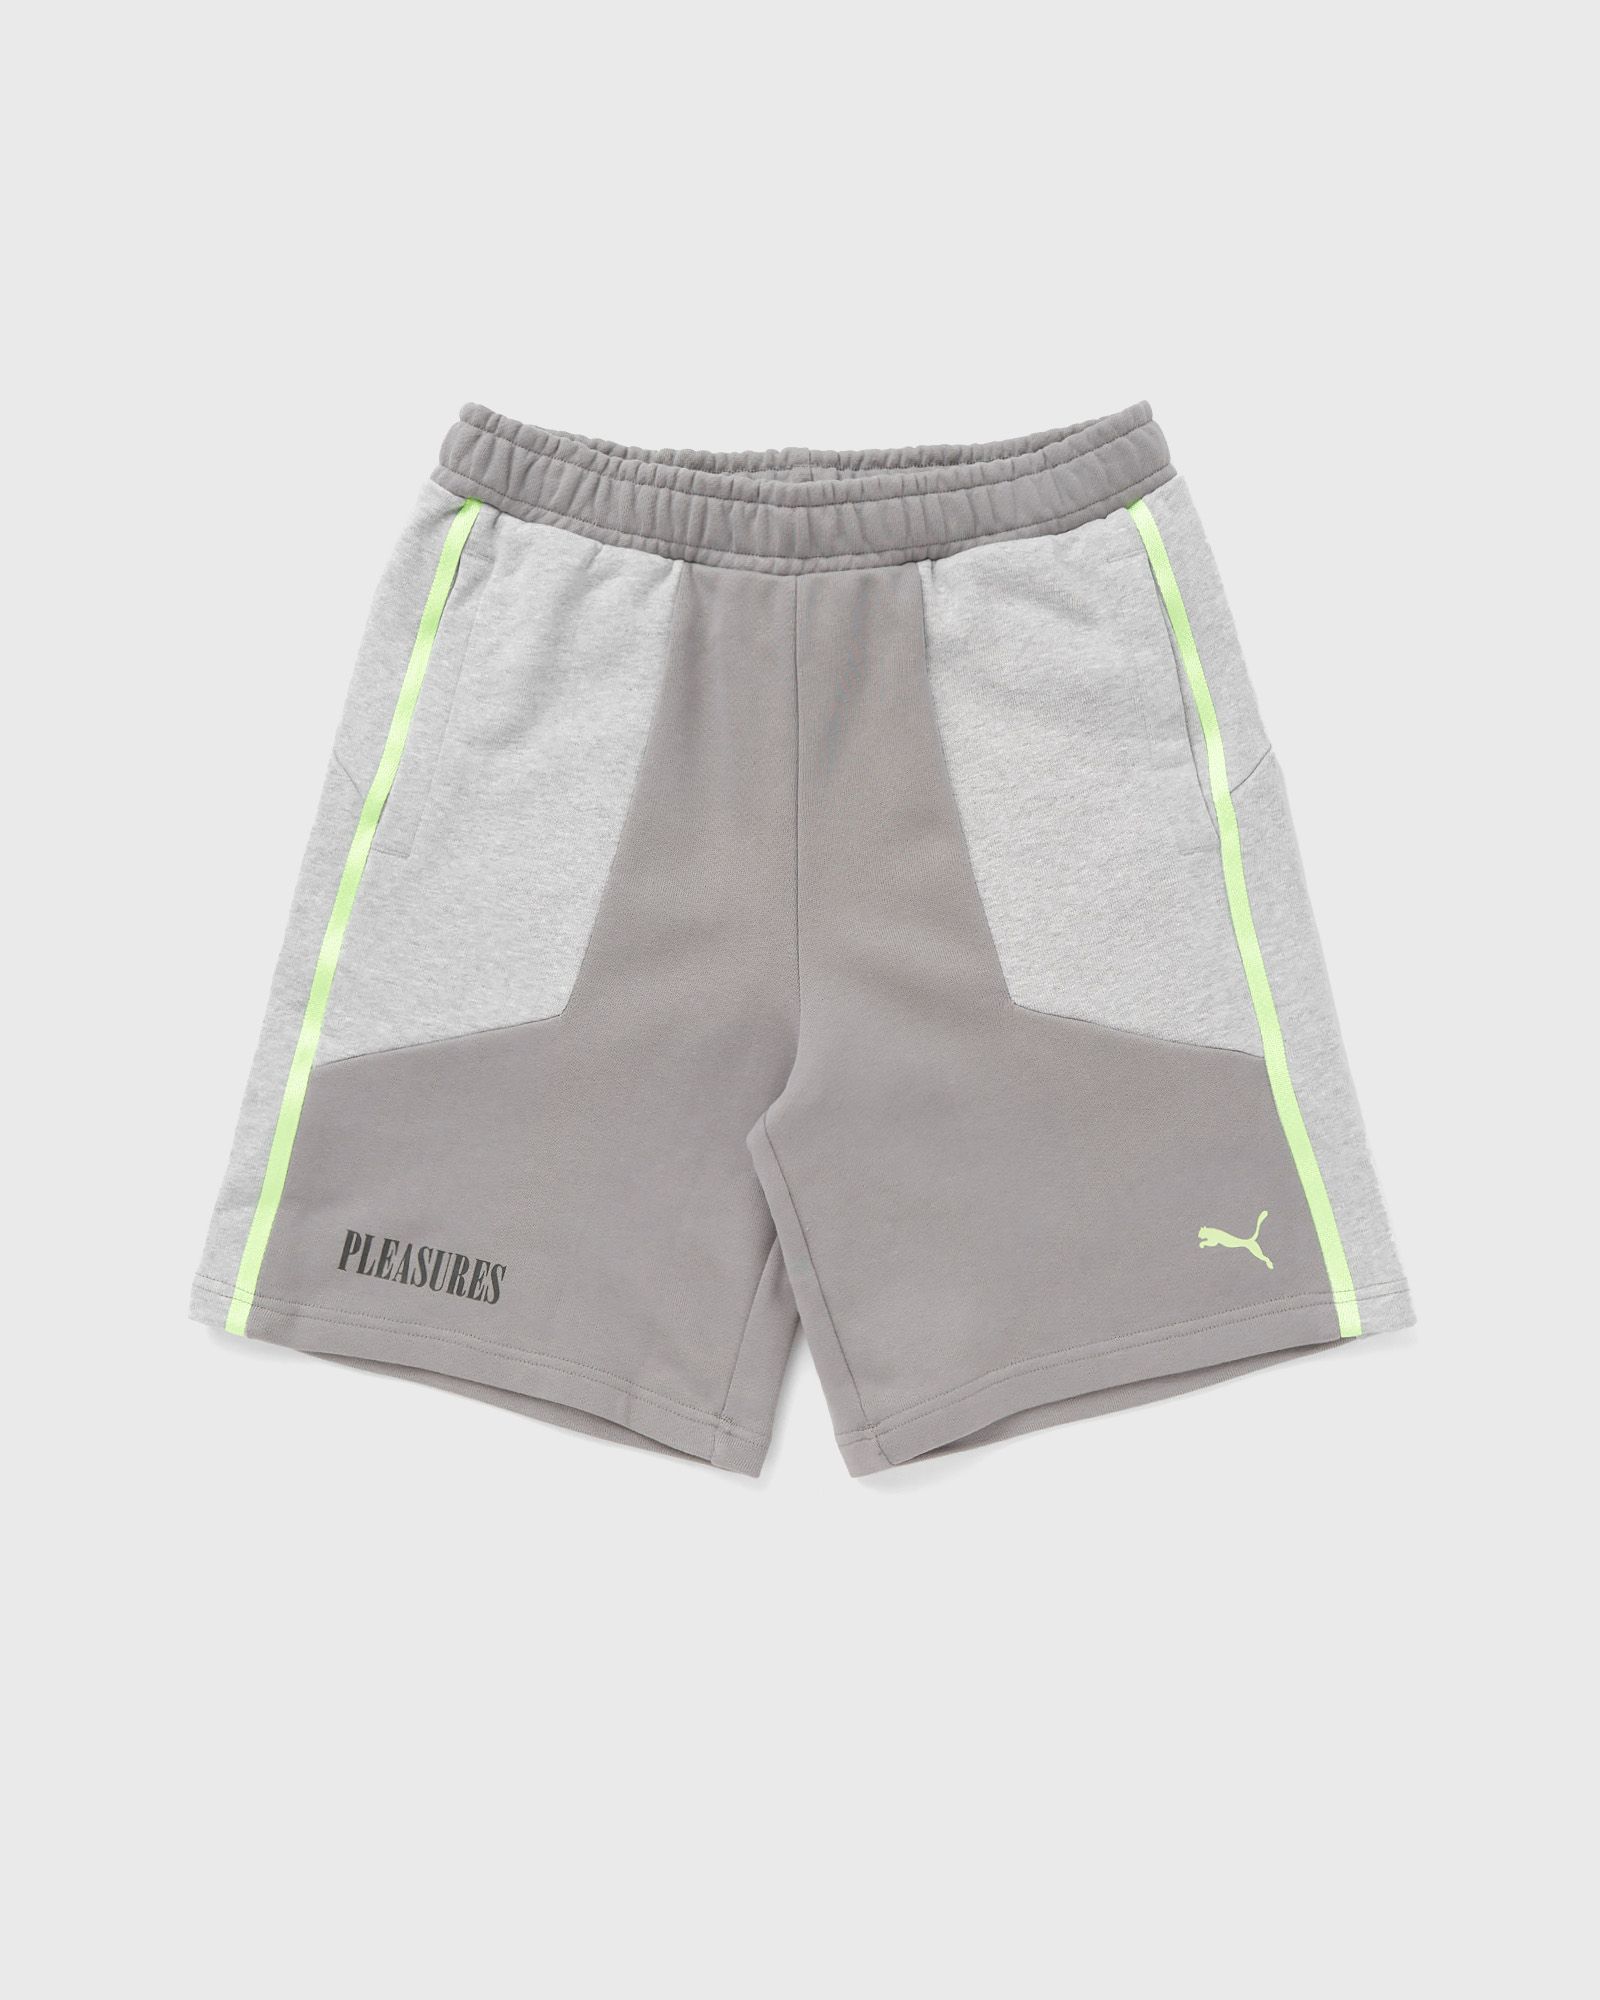 Puma - x pleasures shorts men sport & team shorts grey in größe:xxl